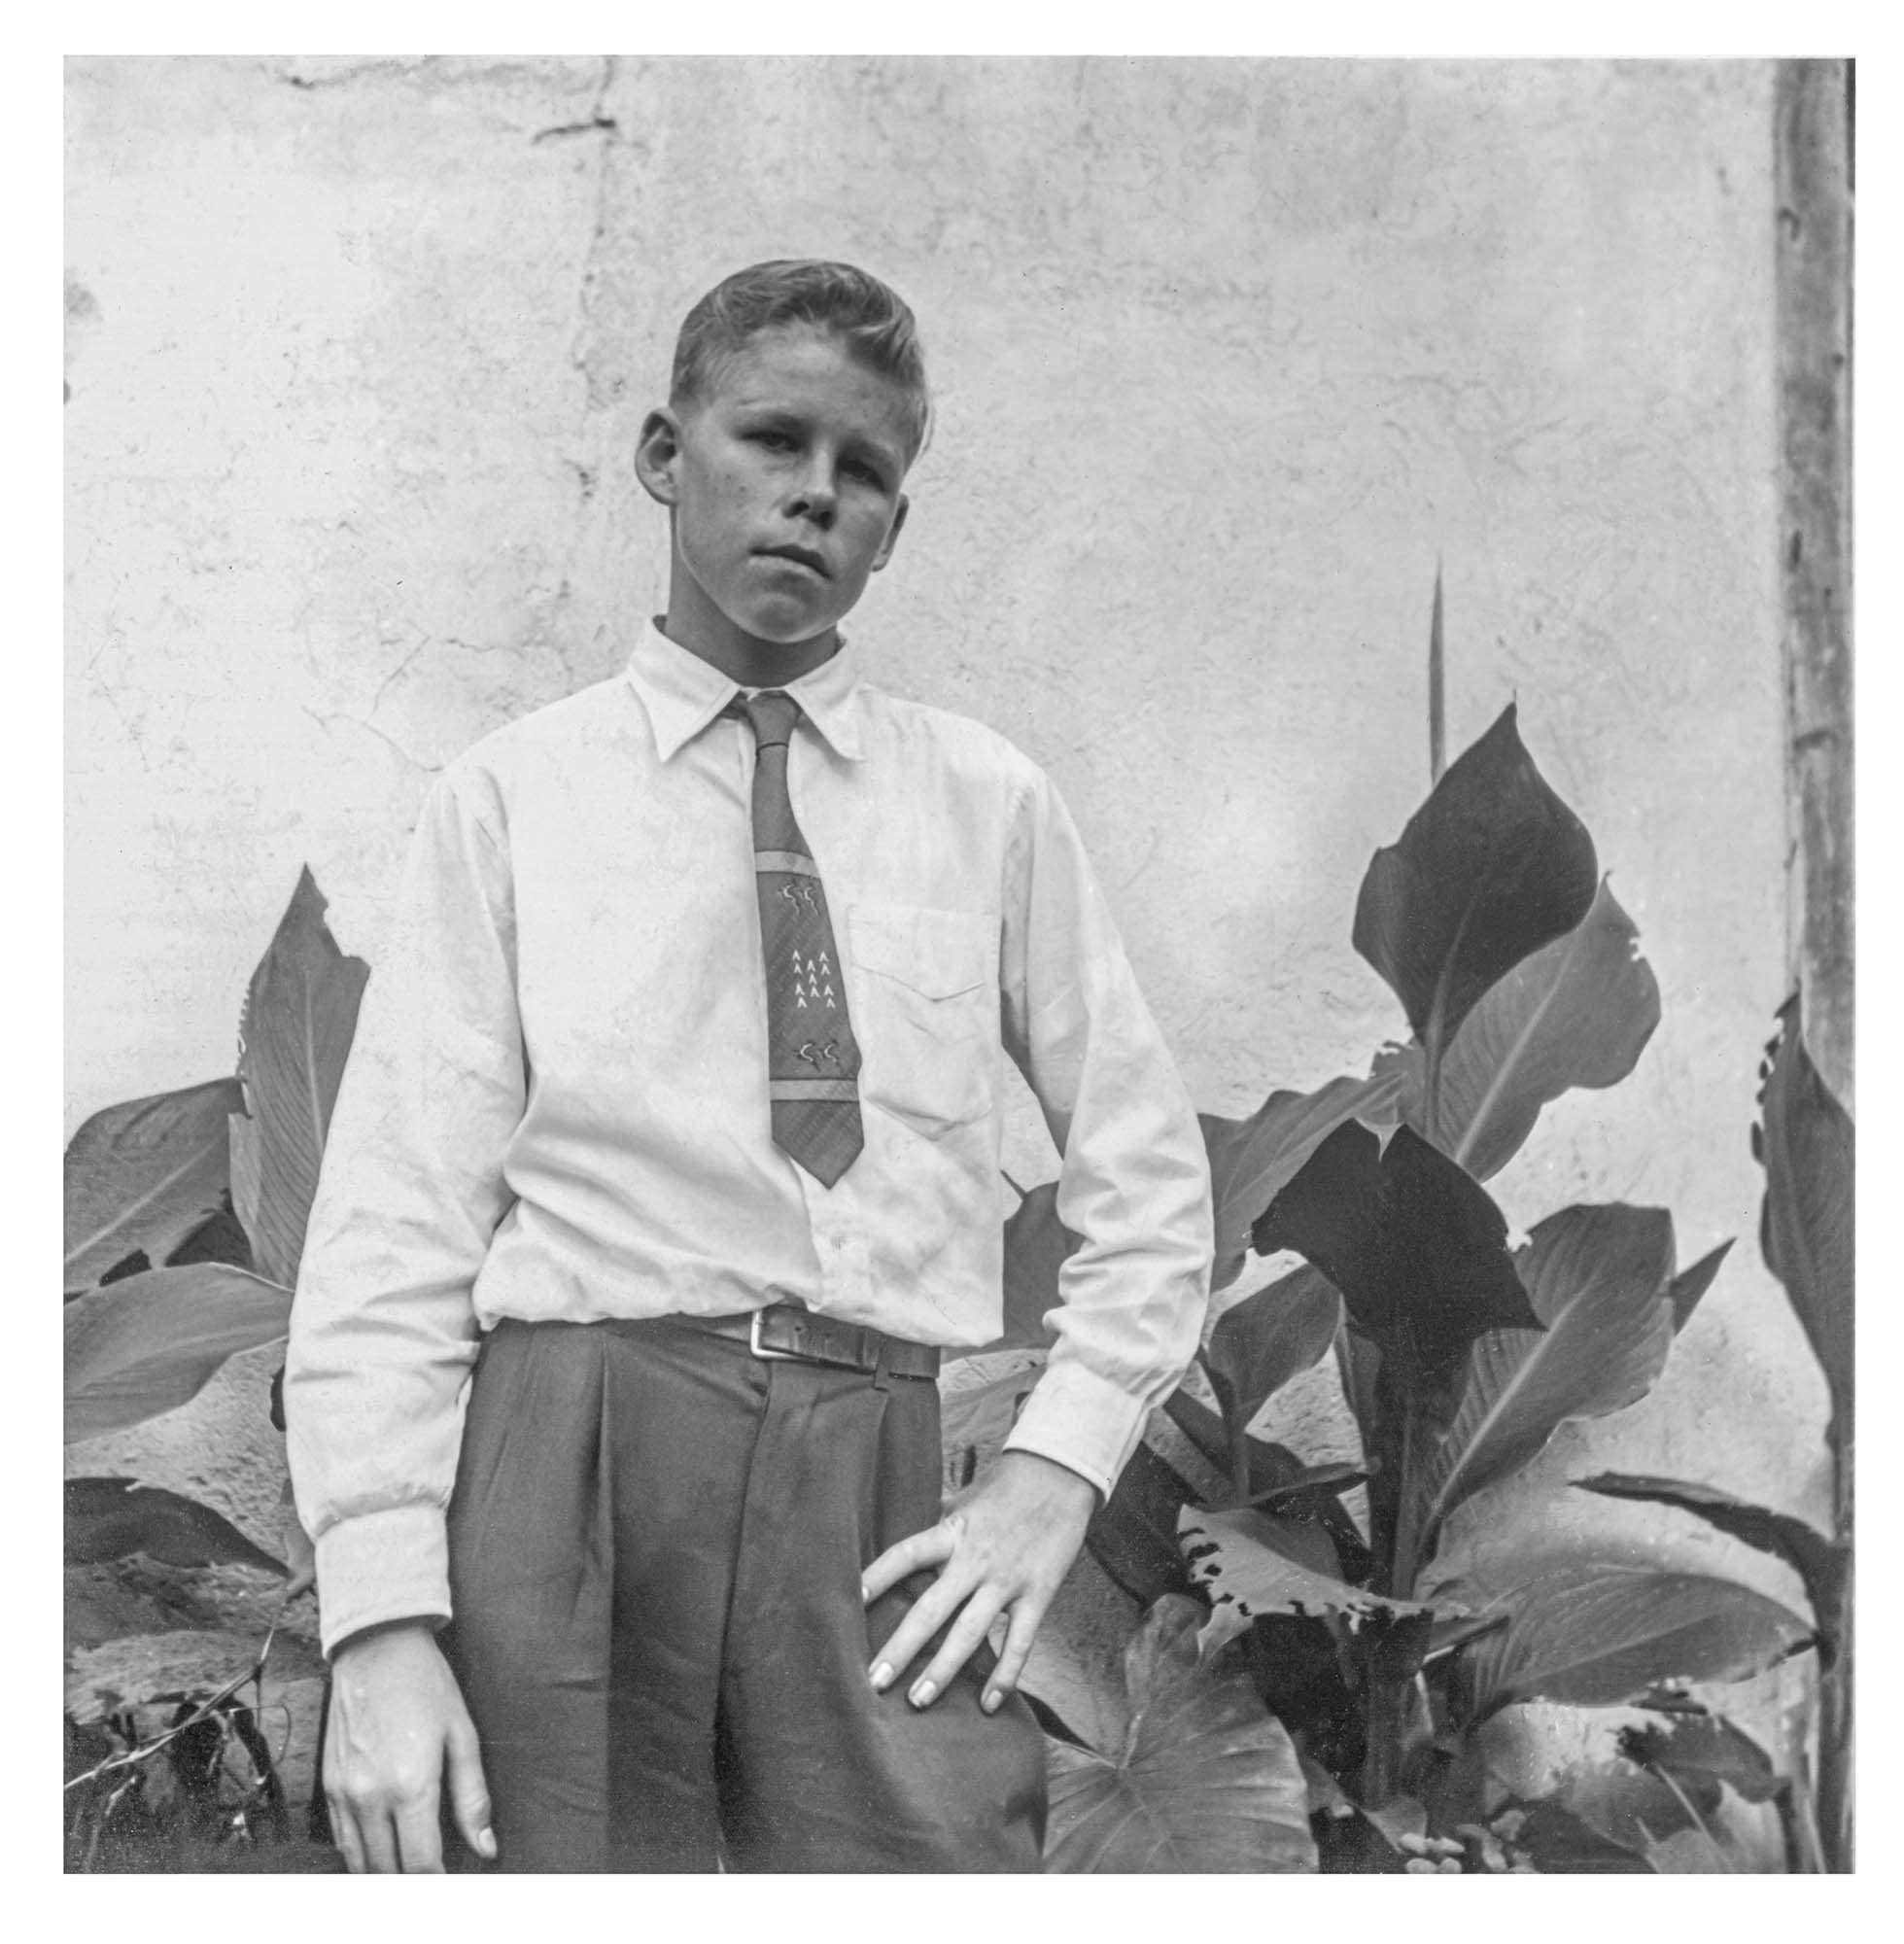 young Gordon “Butch” Stewart